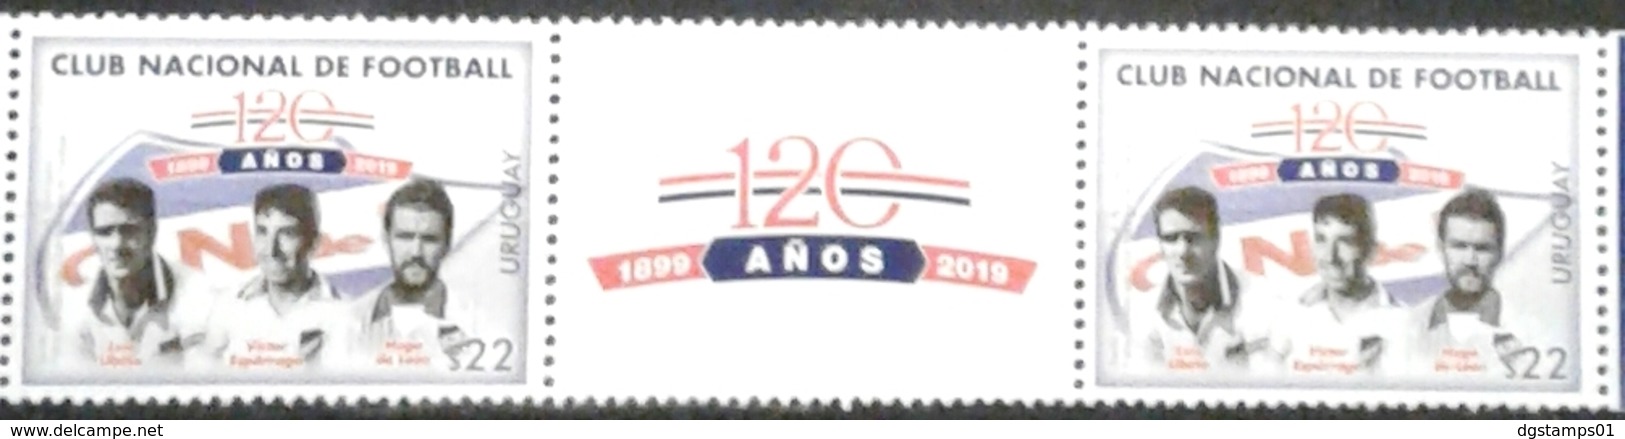 Uruguay 2019 ** 120 Años Club Nacional De Football. L. Ubiña. V. Espárrago. H. De León. - Equipos Famosos